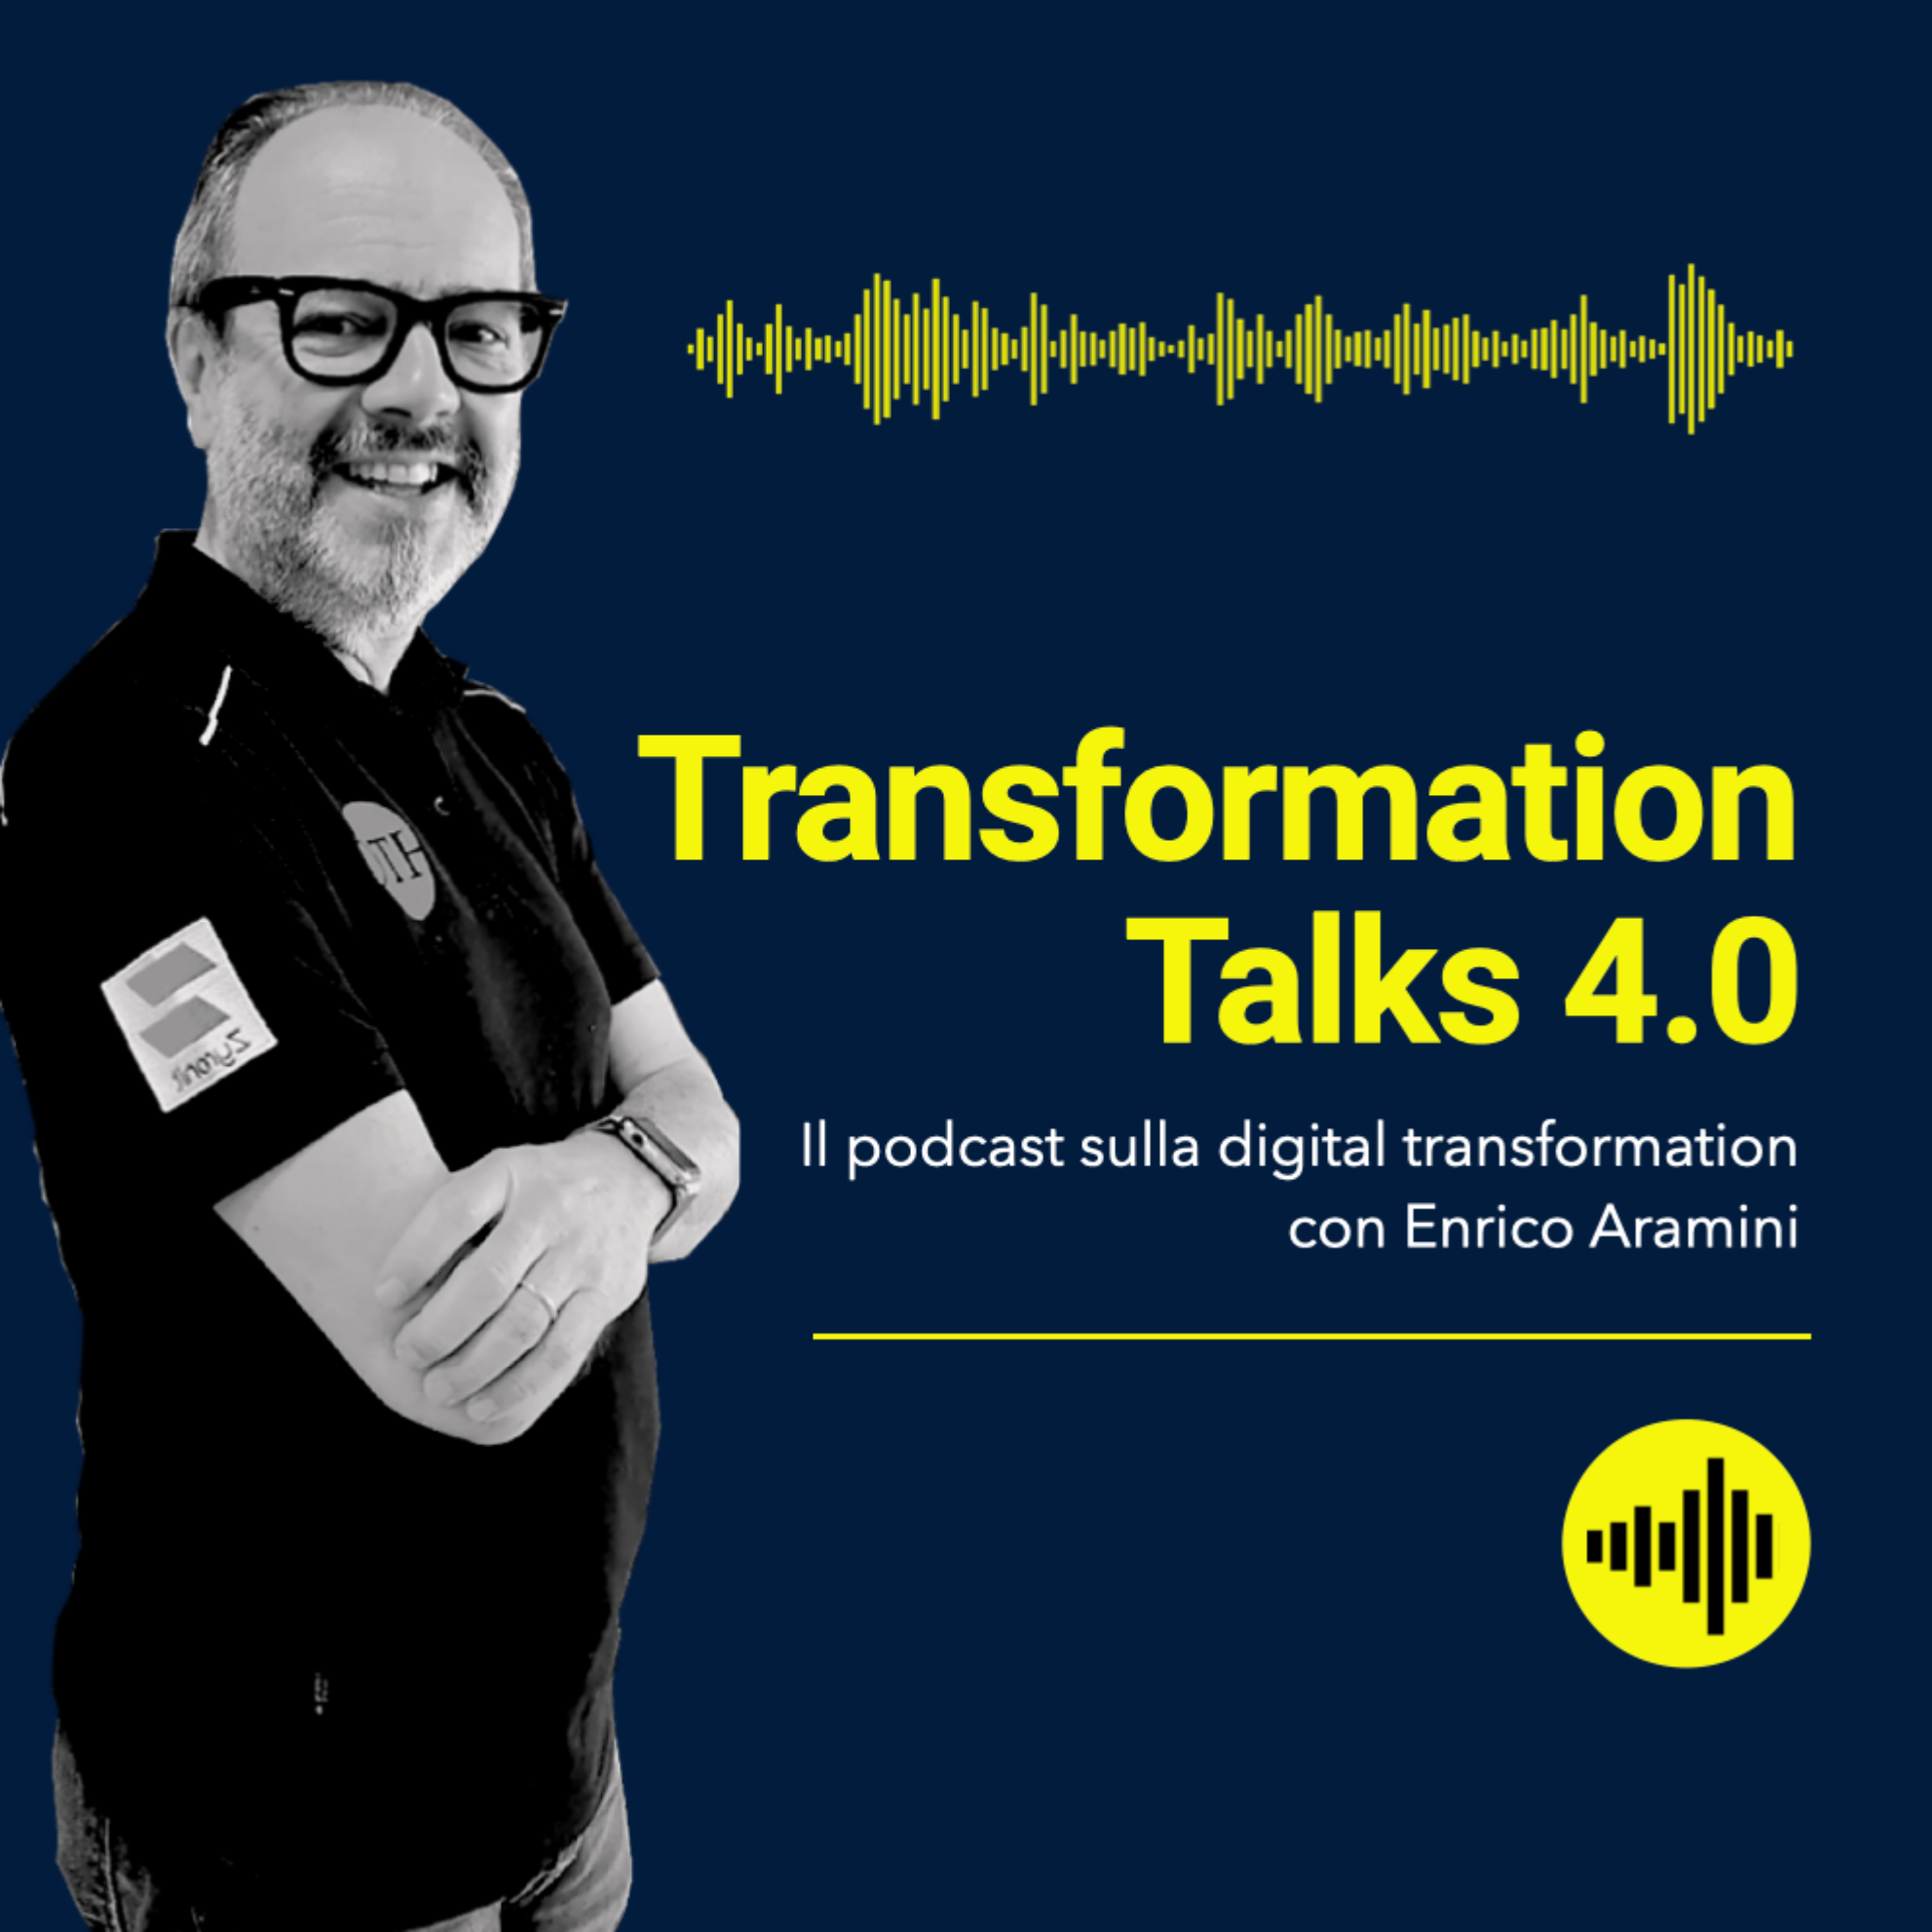 Transformation Talks 4.0